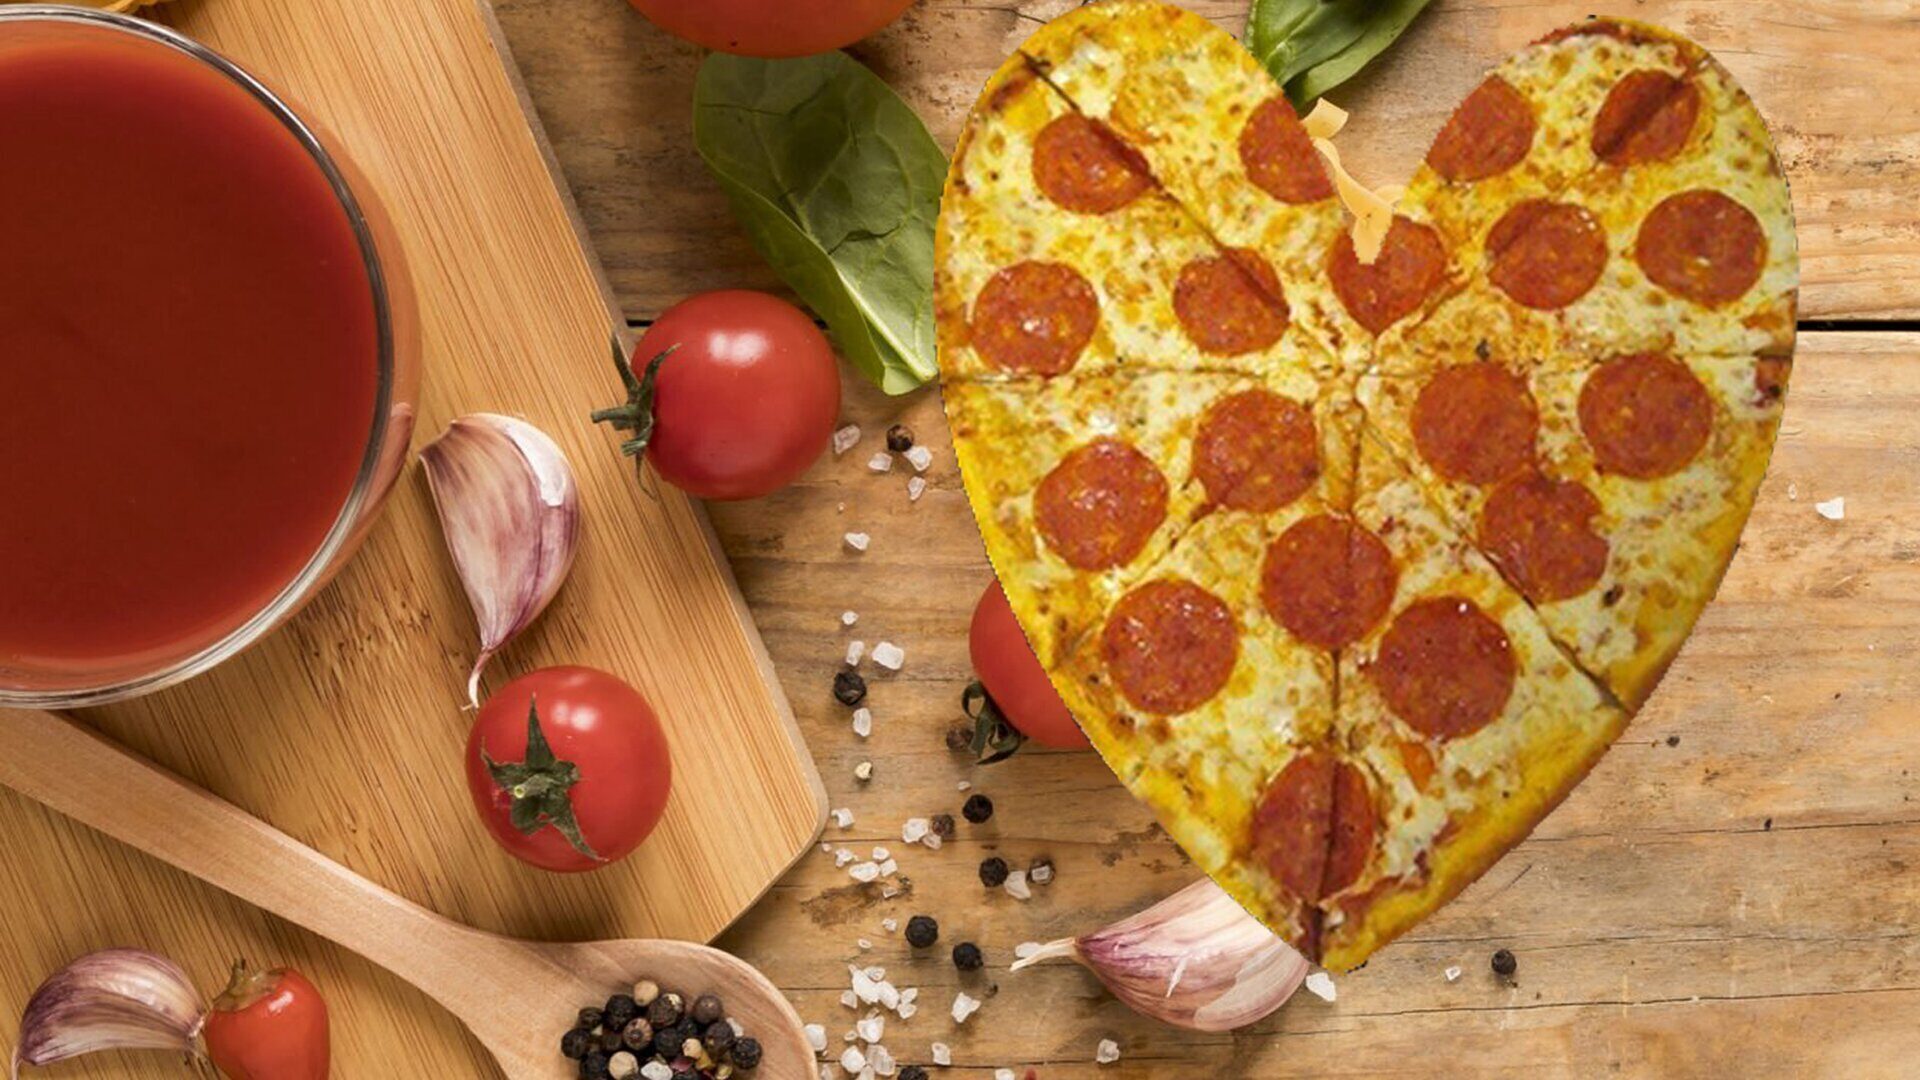 я хочу пиццу песто с пепперони и сосисками так же хочу другую с оливками фото 83